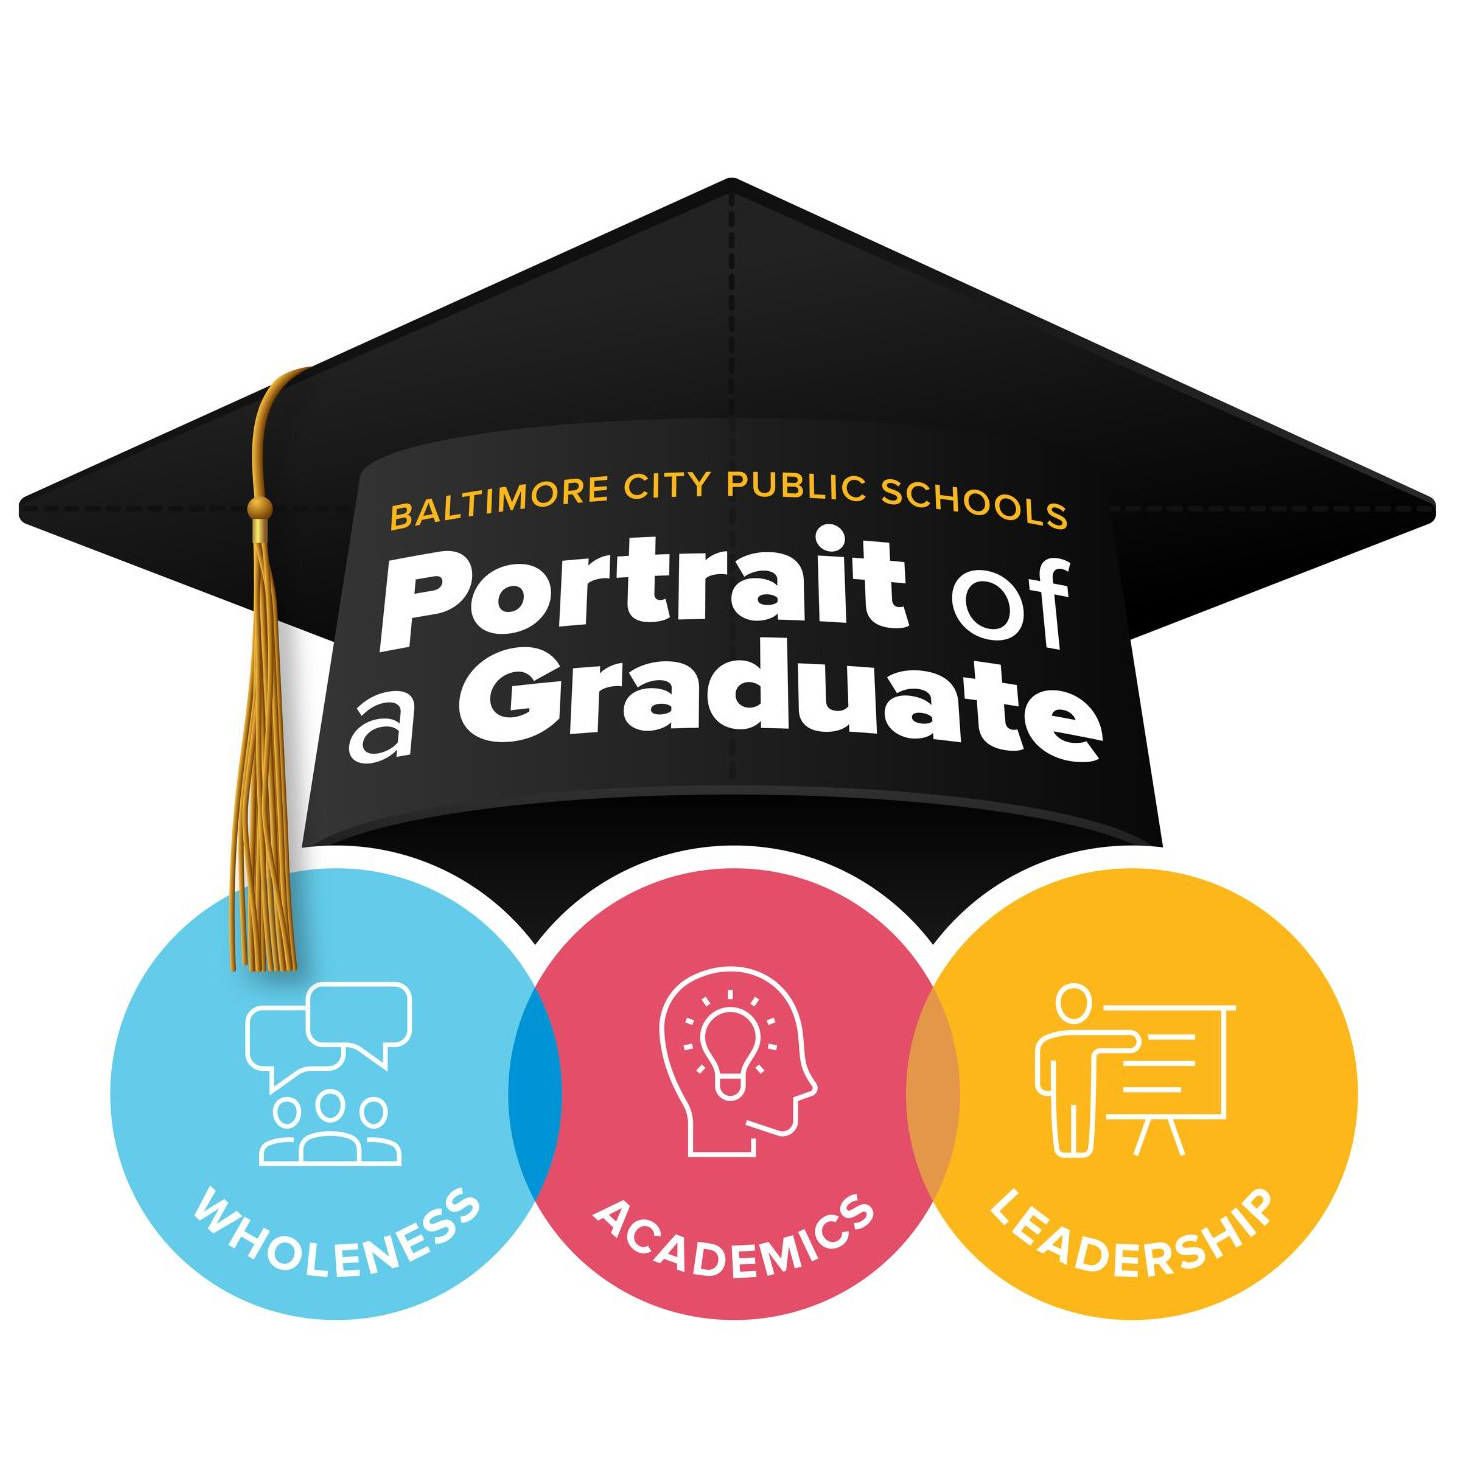 Portrait of a Graduate graphic